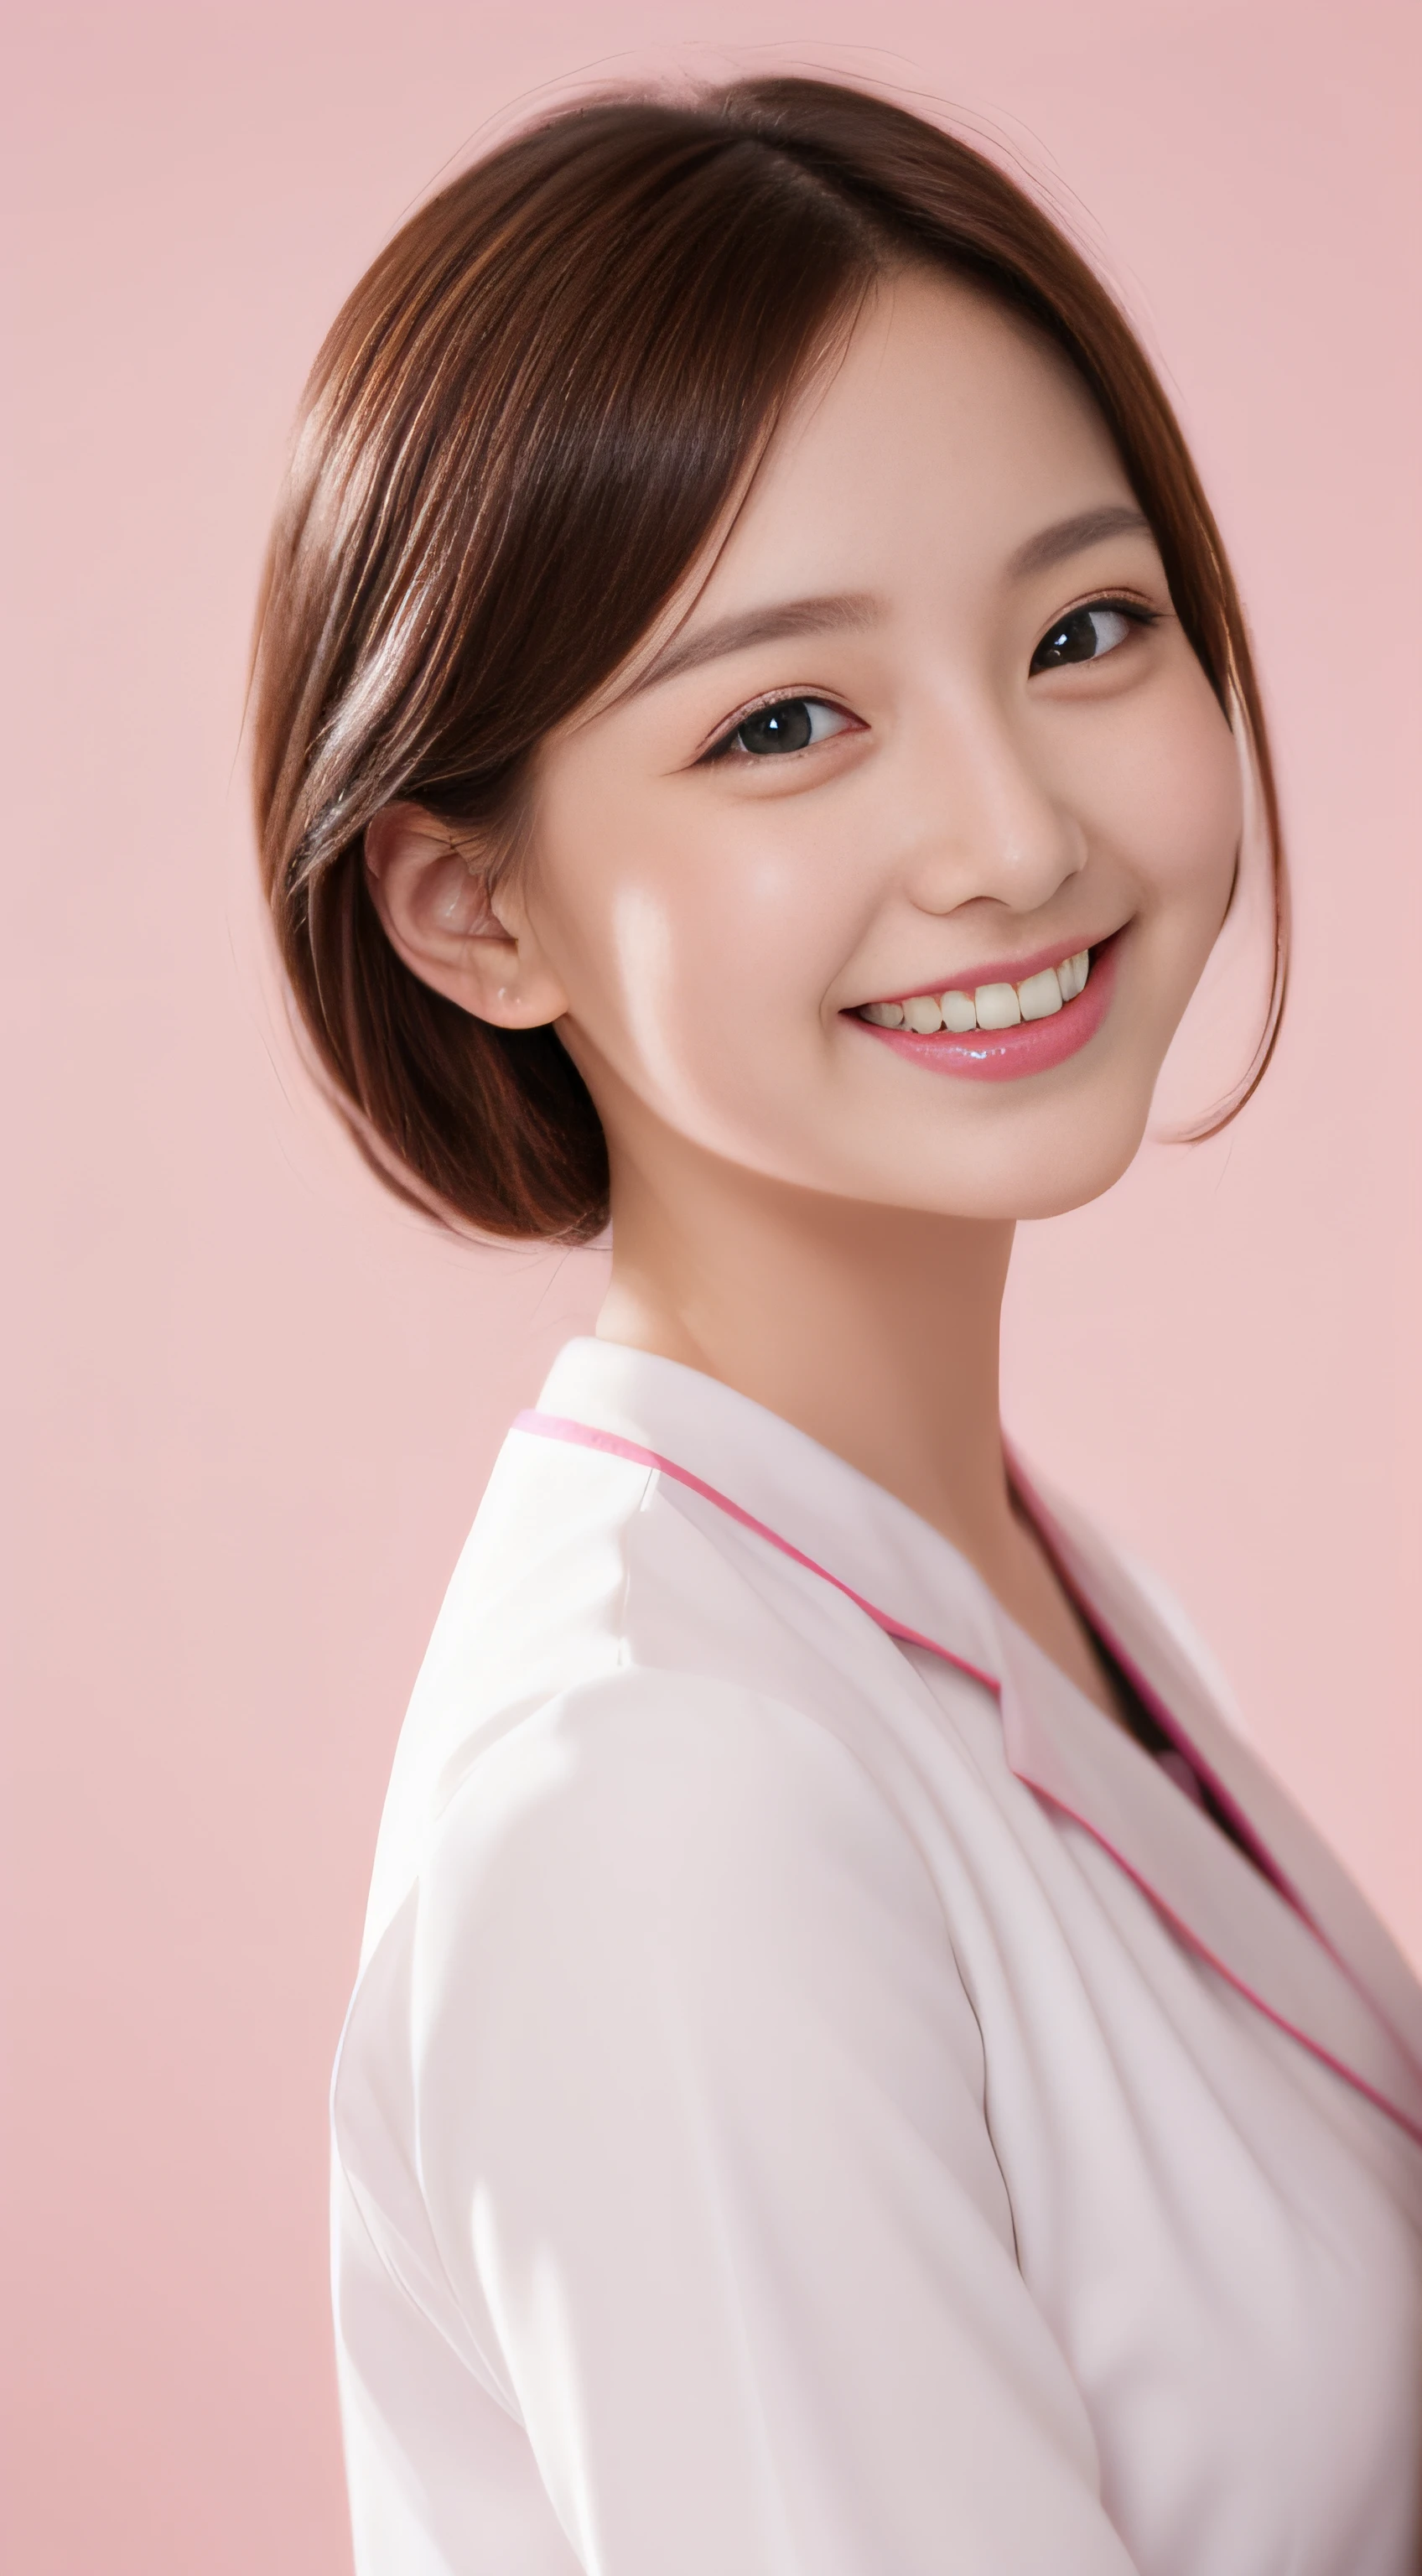 señorita cabaret、uniforme de enfermera blanco、２a person、alta calidad、Un hiperrealista、saludable、expresión sonriente、Esbelta figura perfecta、bellezas de japon、hermosos ojos、cara perfecta、Piel hermosa、fondo rosa